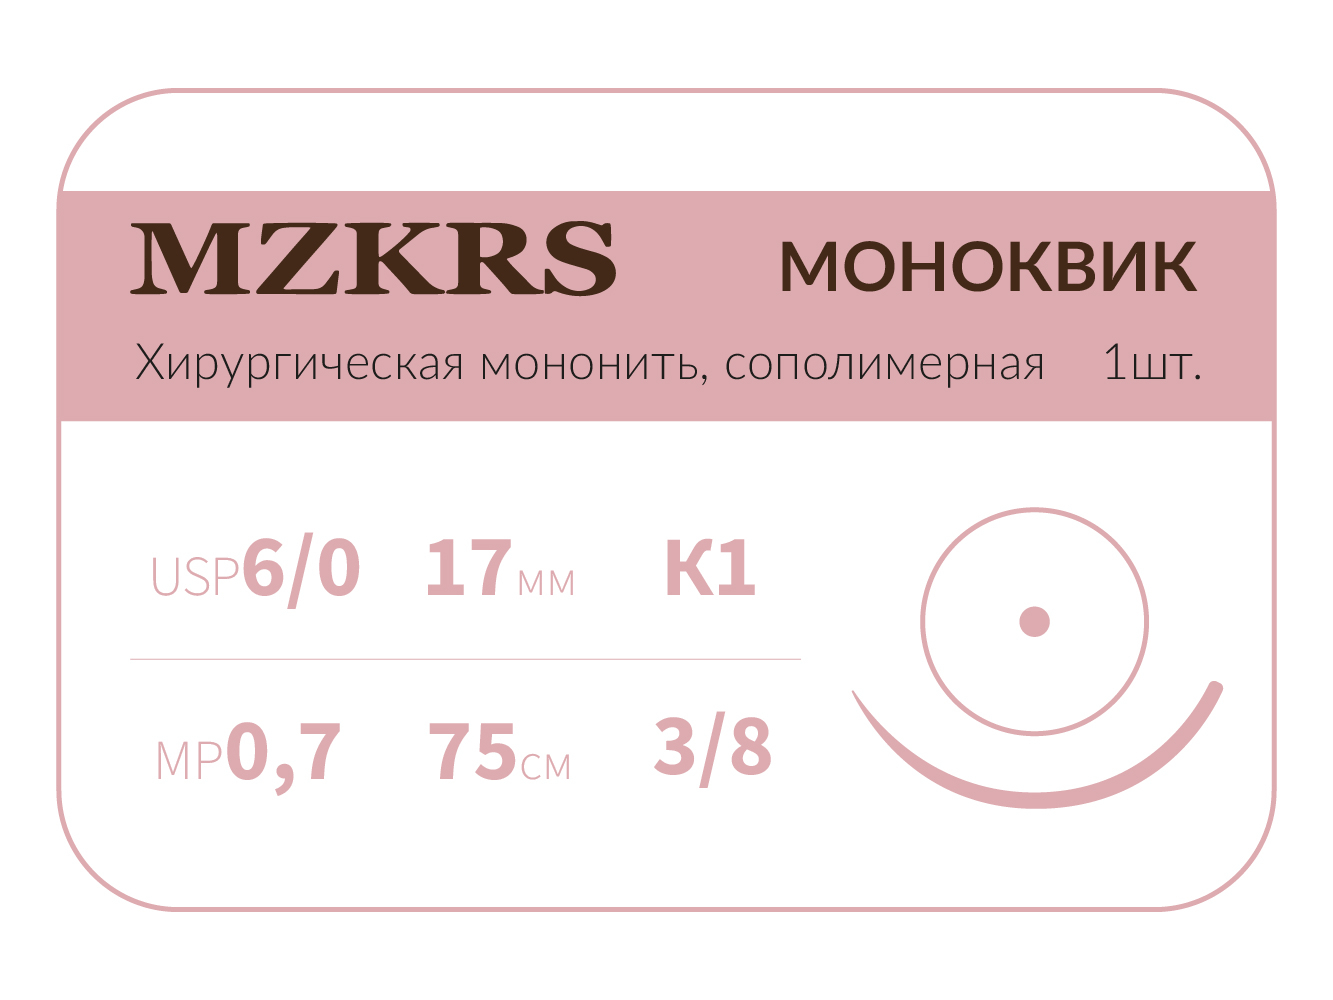 1738К1 Premium-6/0 (0,7)75 МОНК МОНОКВИК хирургическая мононить, сополимерная, MZKRS (Россия)